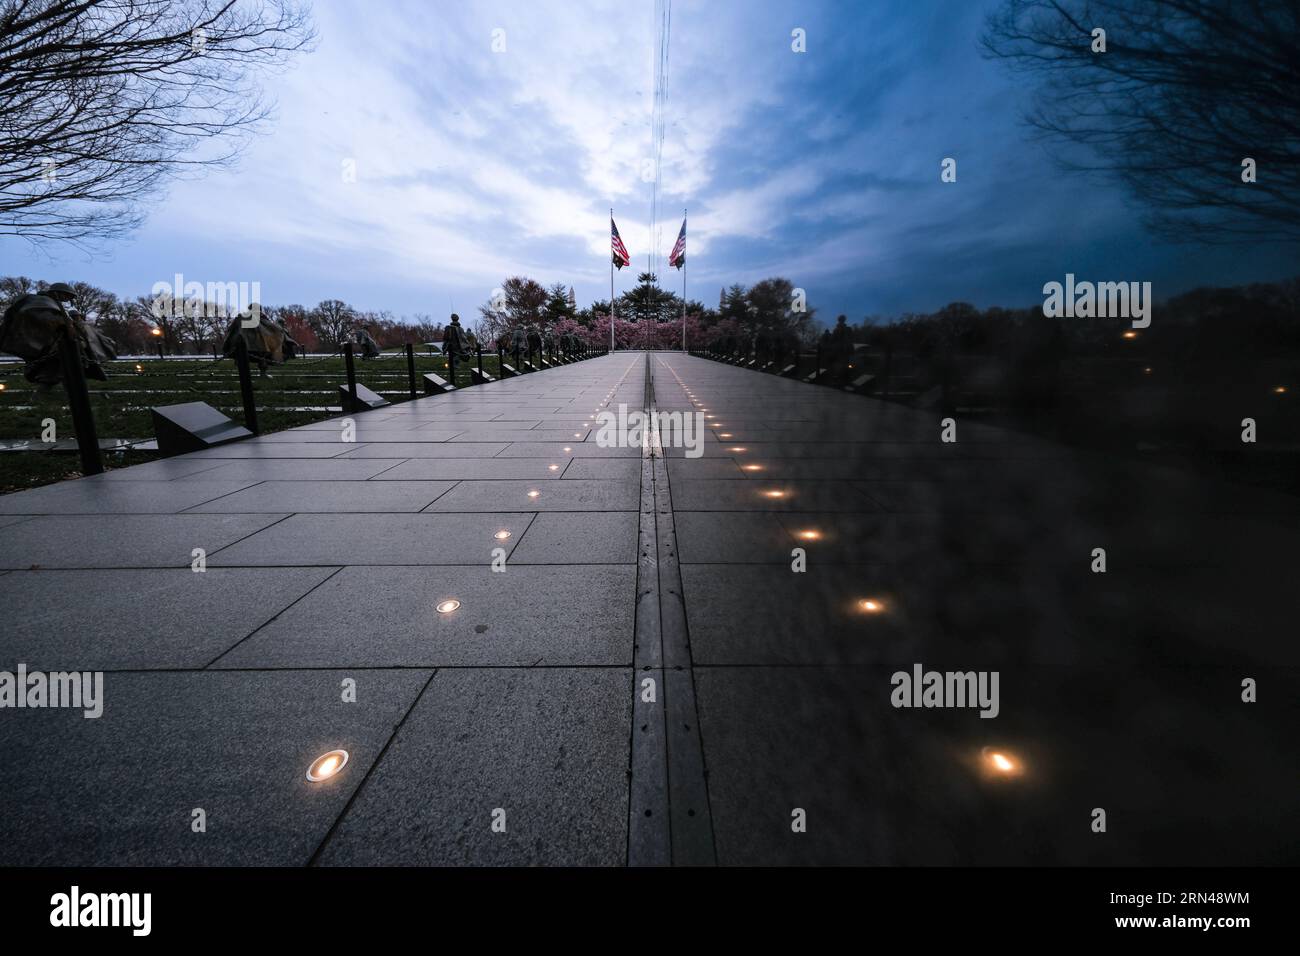 WASHINGTON DC, Vereinigte Staaten – das Korean war Veterans Memorial steht in feierlicher Reflexion unter dem schwachen Licht der Vordämmerung. Stockfoto